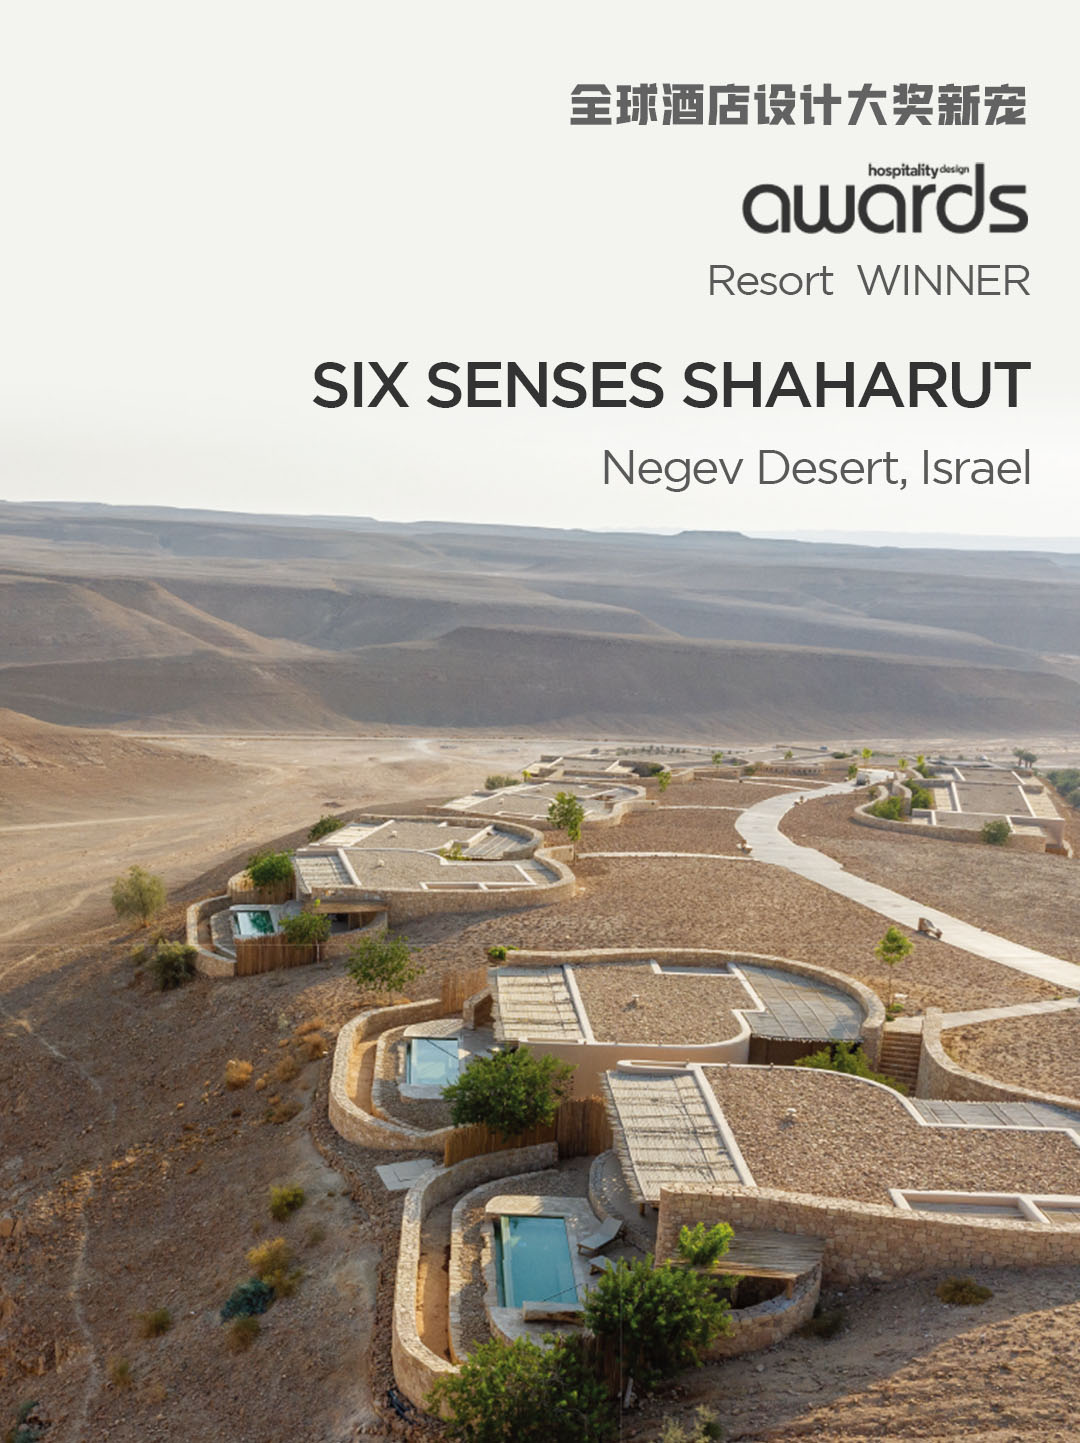 Six Senses Shaharut